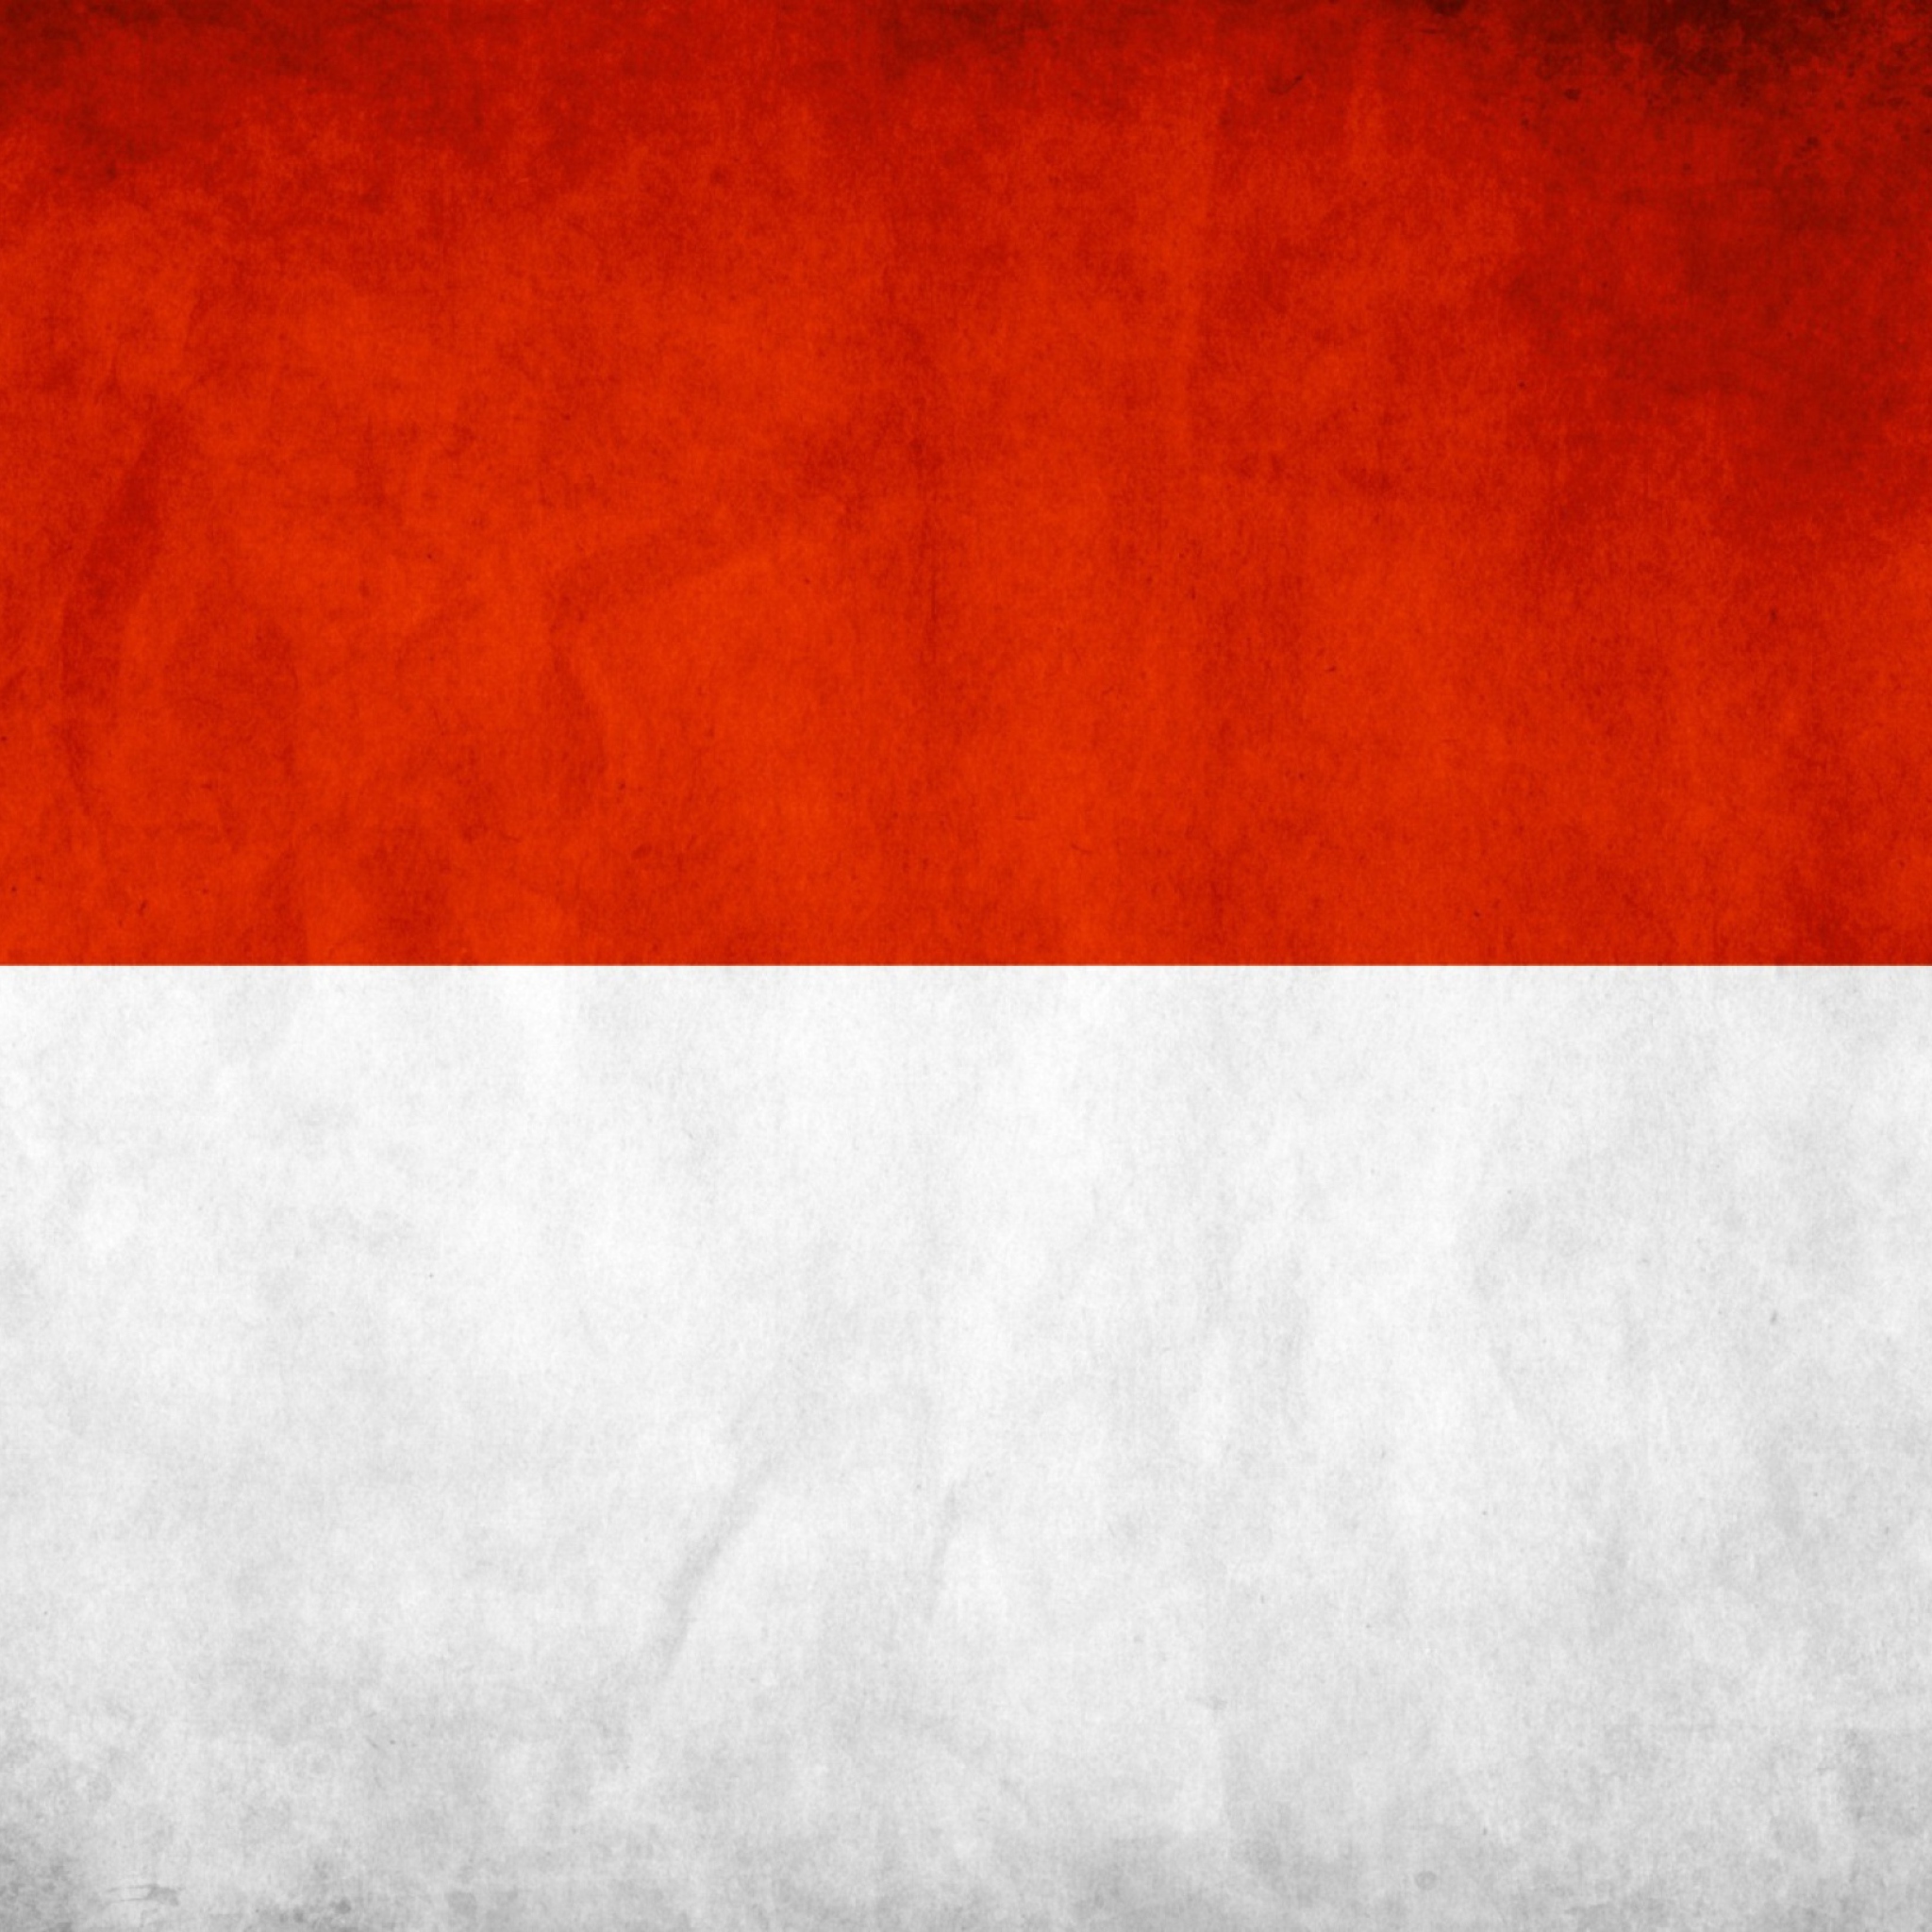 Indonesia Grunge Flag screenshot #1 2048x2048